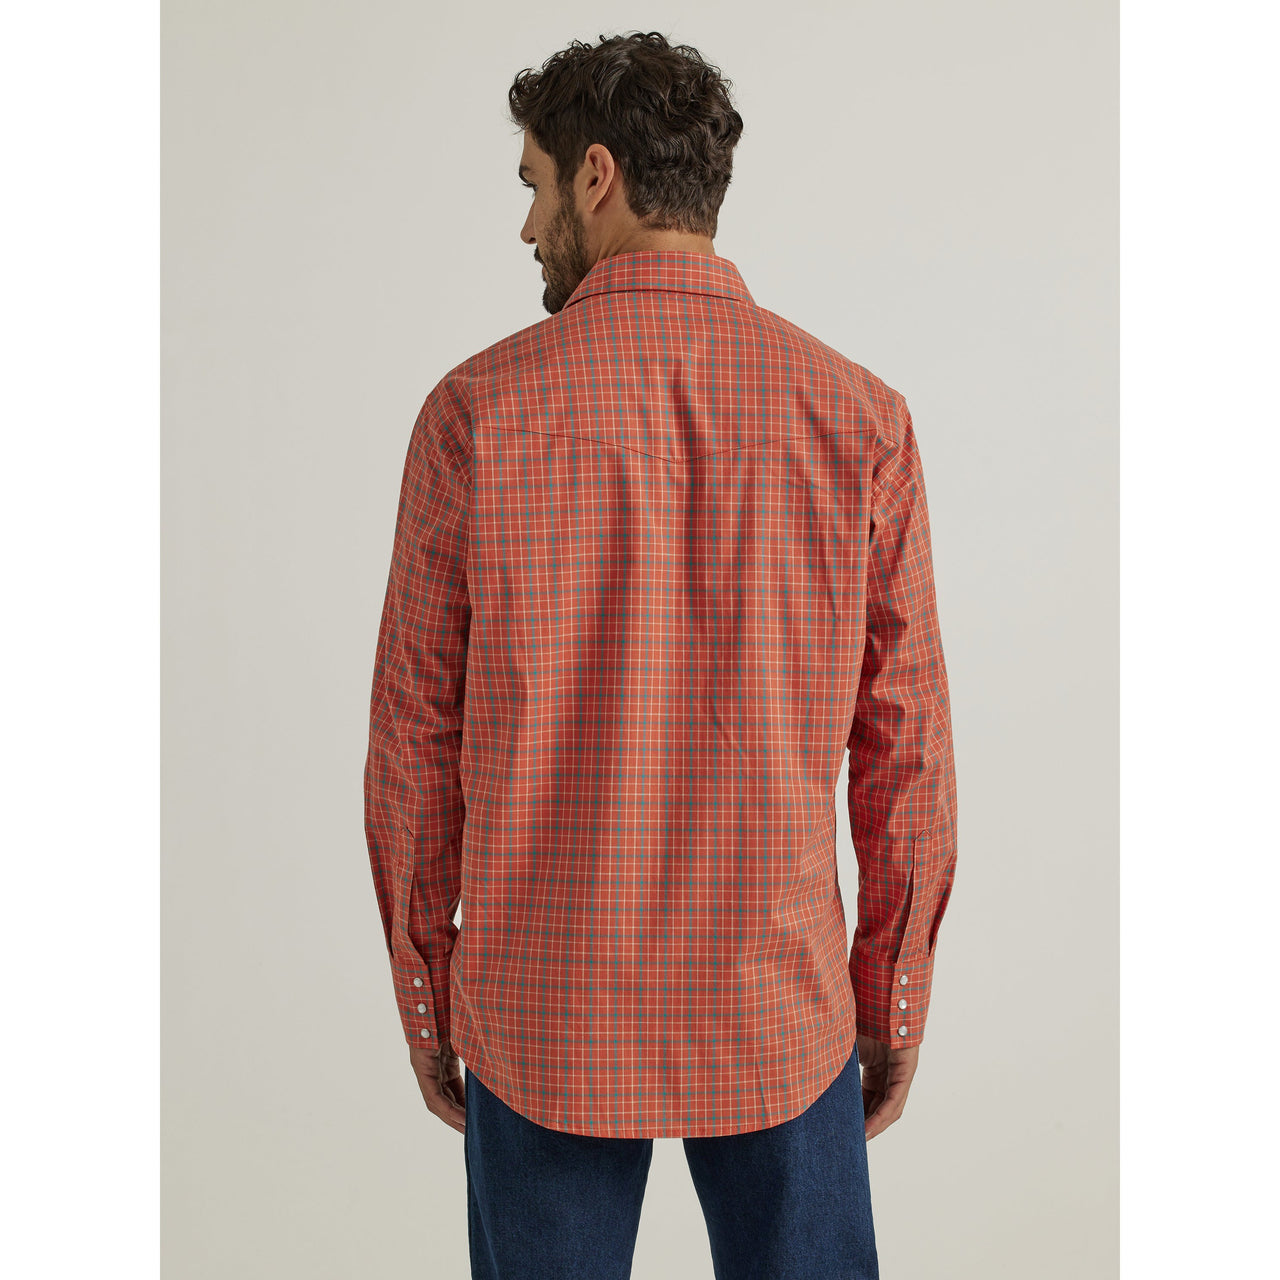 Wrangler Men's Wrinkle Resist Long Sleeve Shirt - Orange